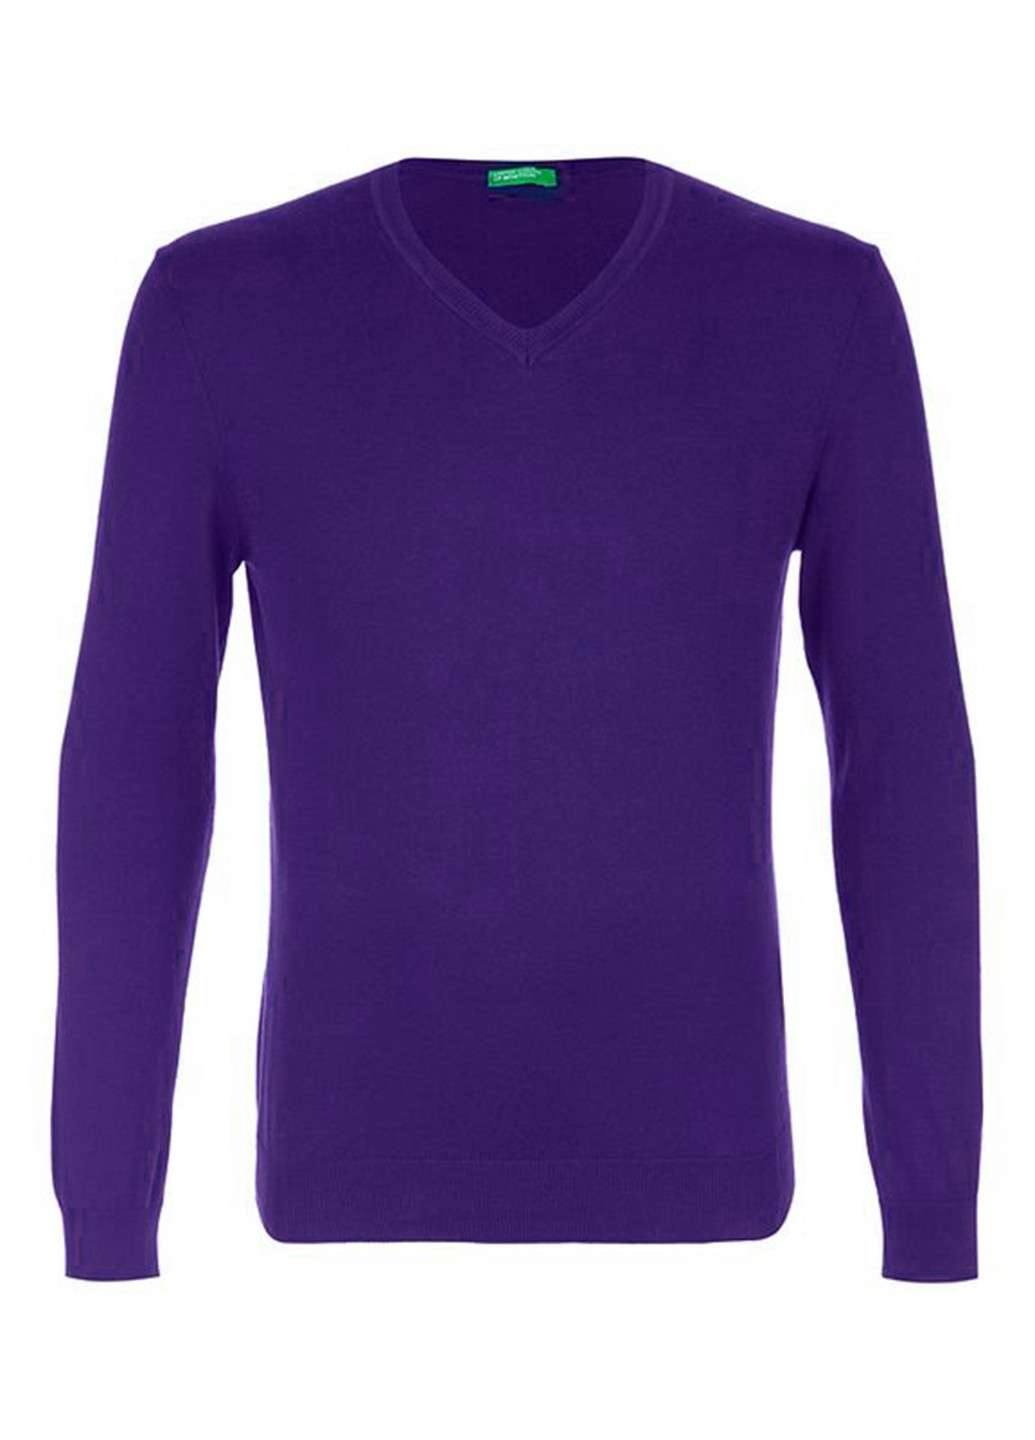 Темно-фиолетовый демисезонный пуловер пуловер United Colors of Benetton